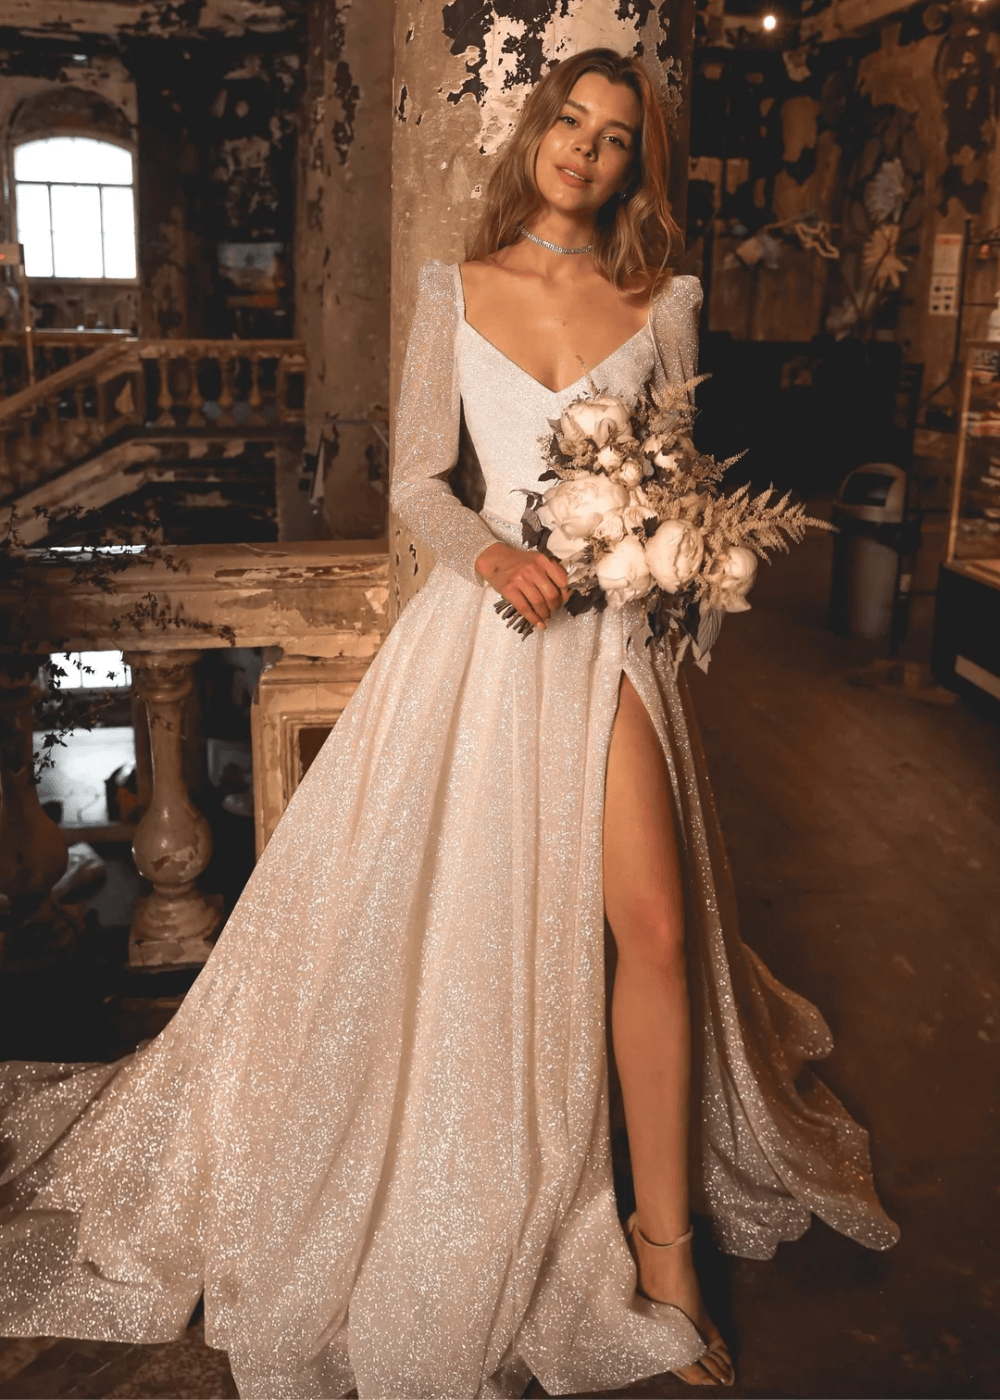 Miranda Dress  - vestido de noiva longo com mangas compridas e brilho - vestidos de noiva - outono - noiva em pé - https://stealthelook.com.br